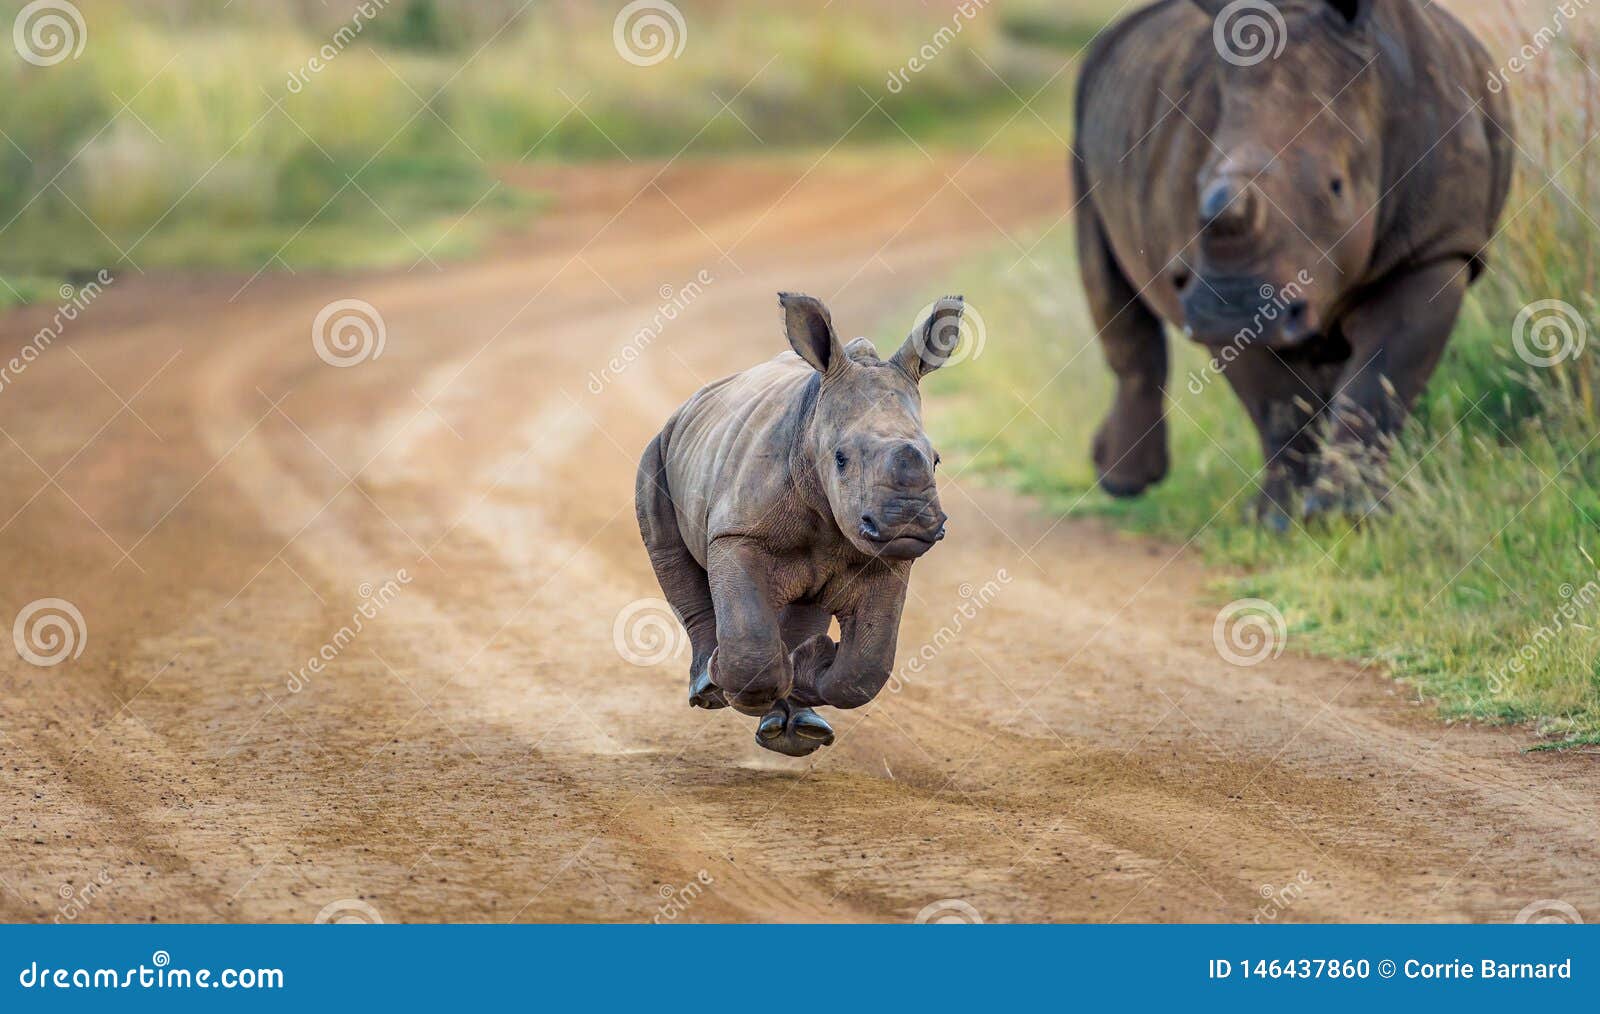 baby rhino running